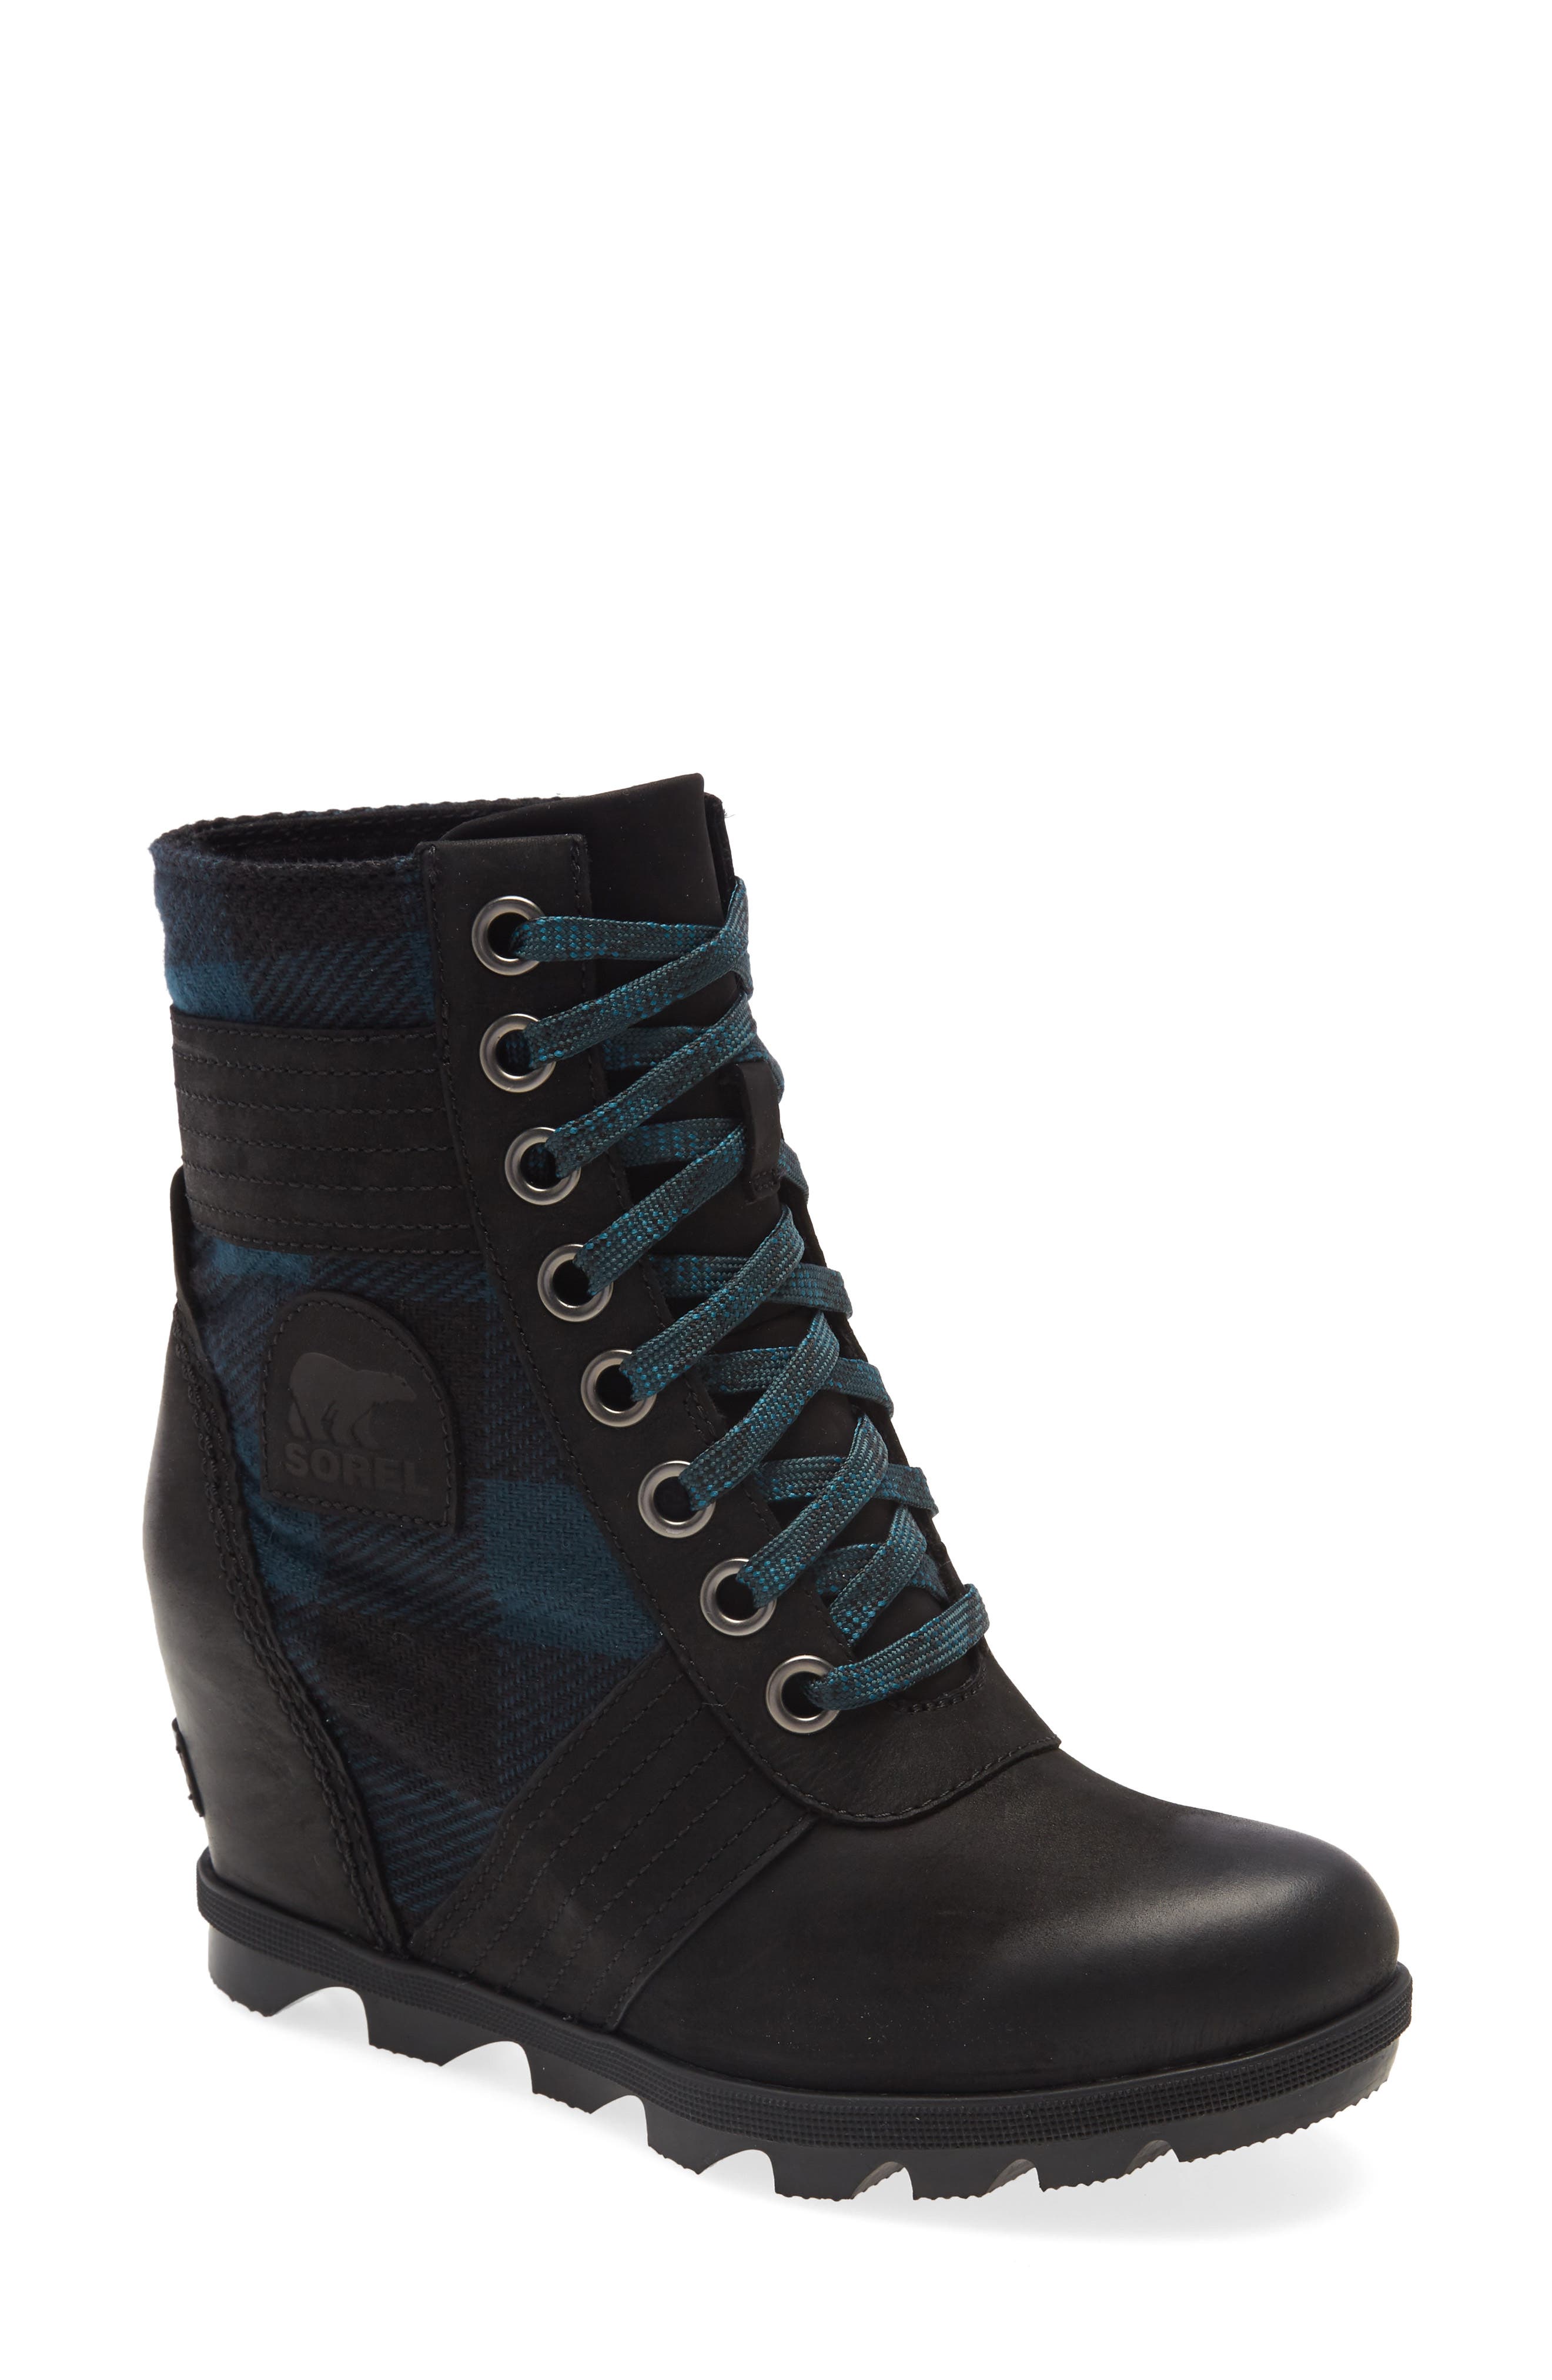 Sorel Lexie Waterproof Leather Wedge Boot In Black/ Black